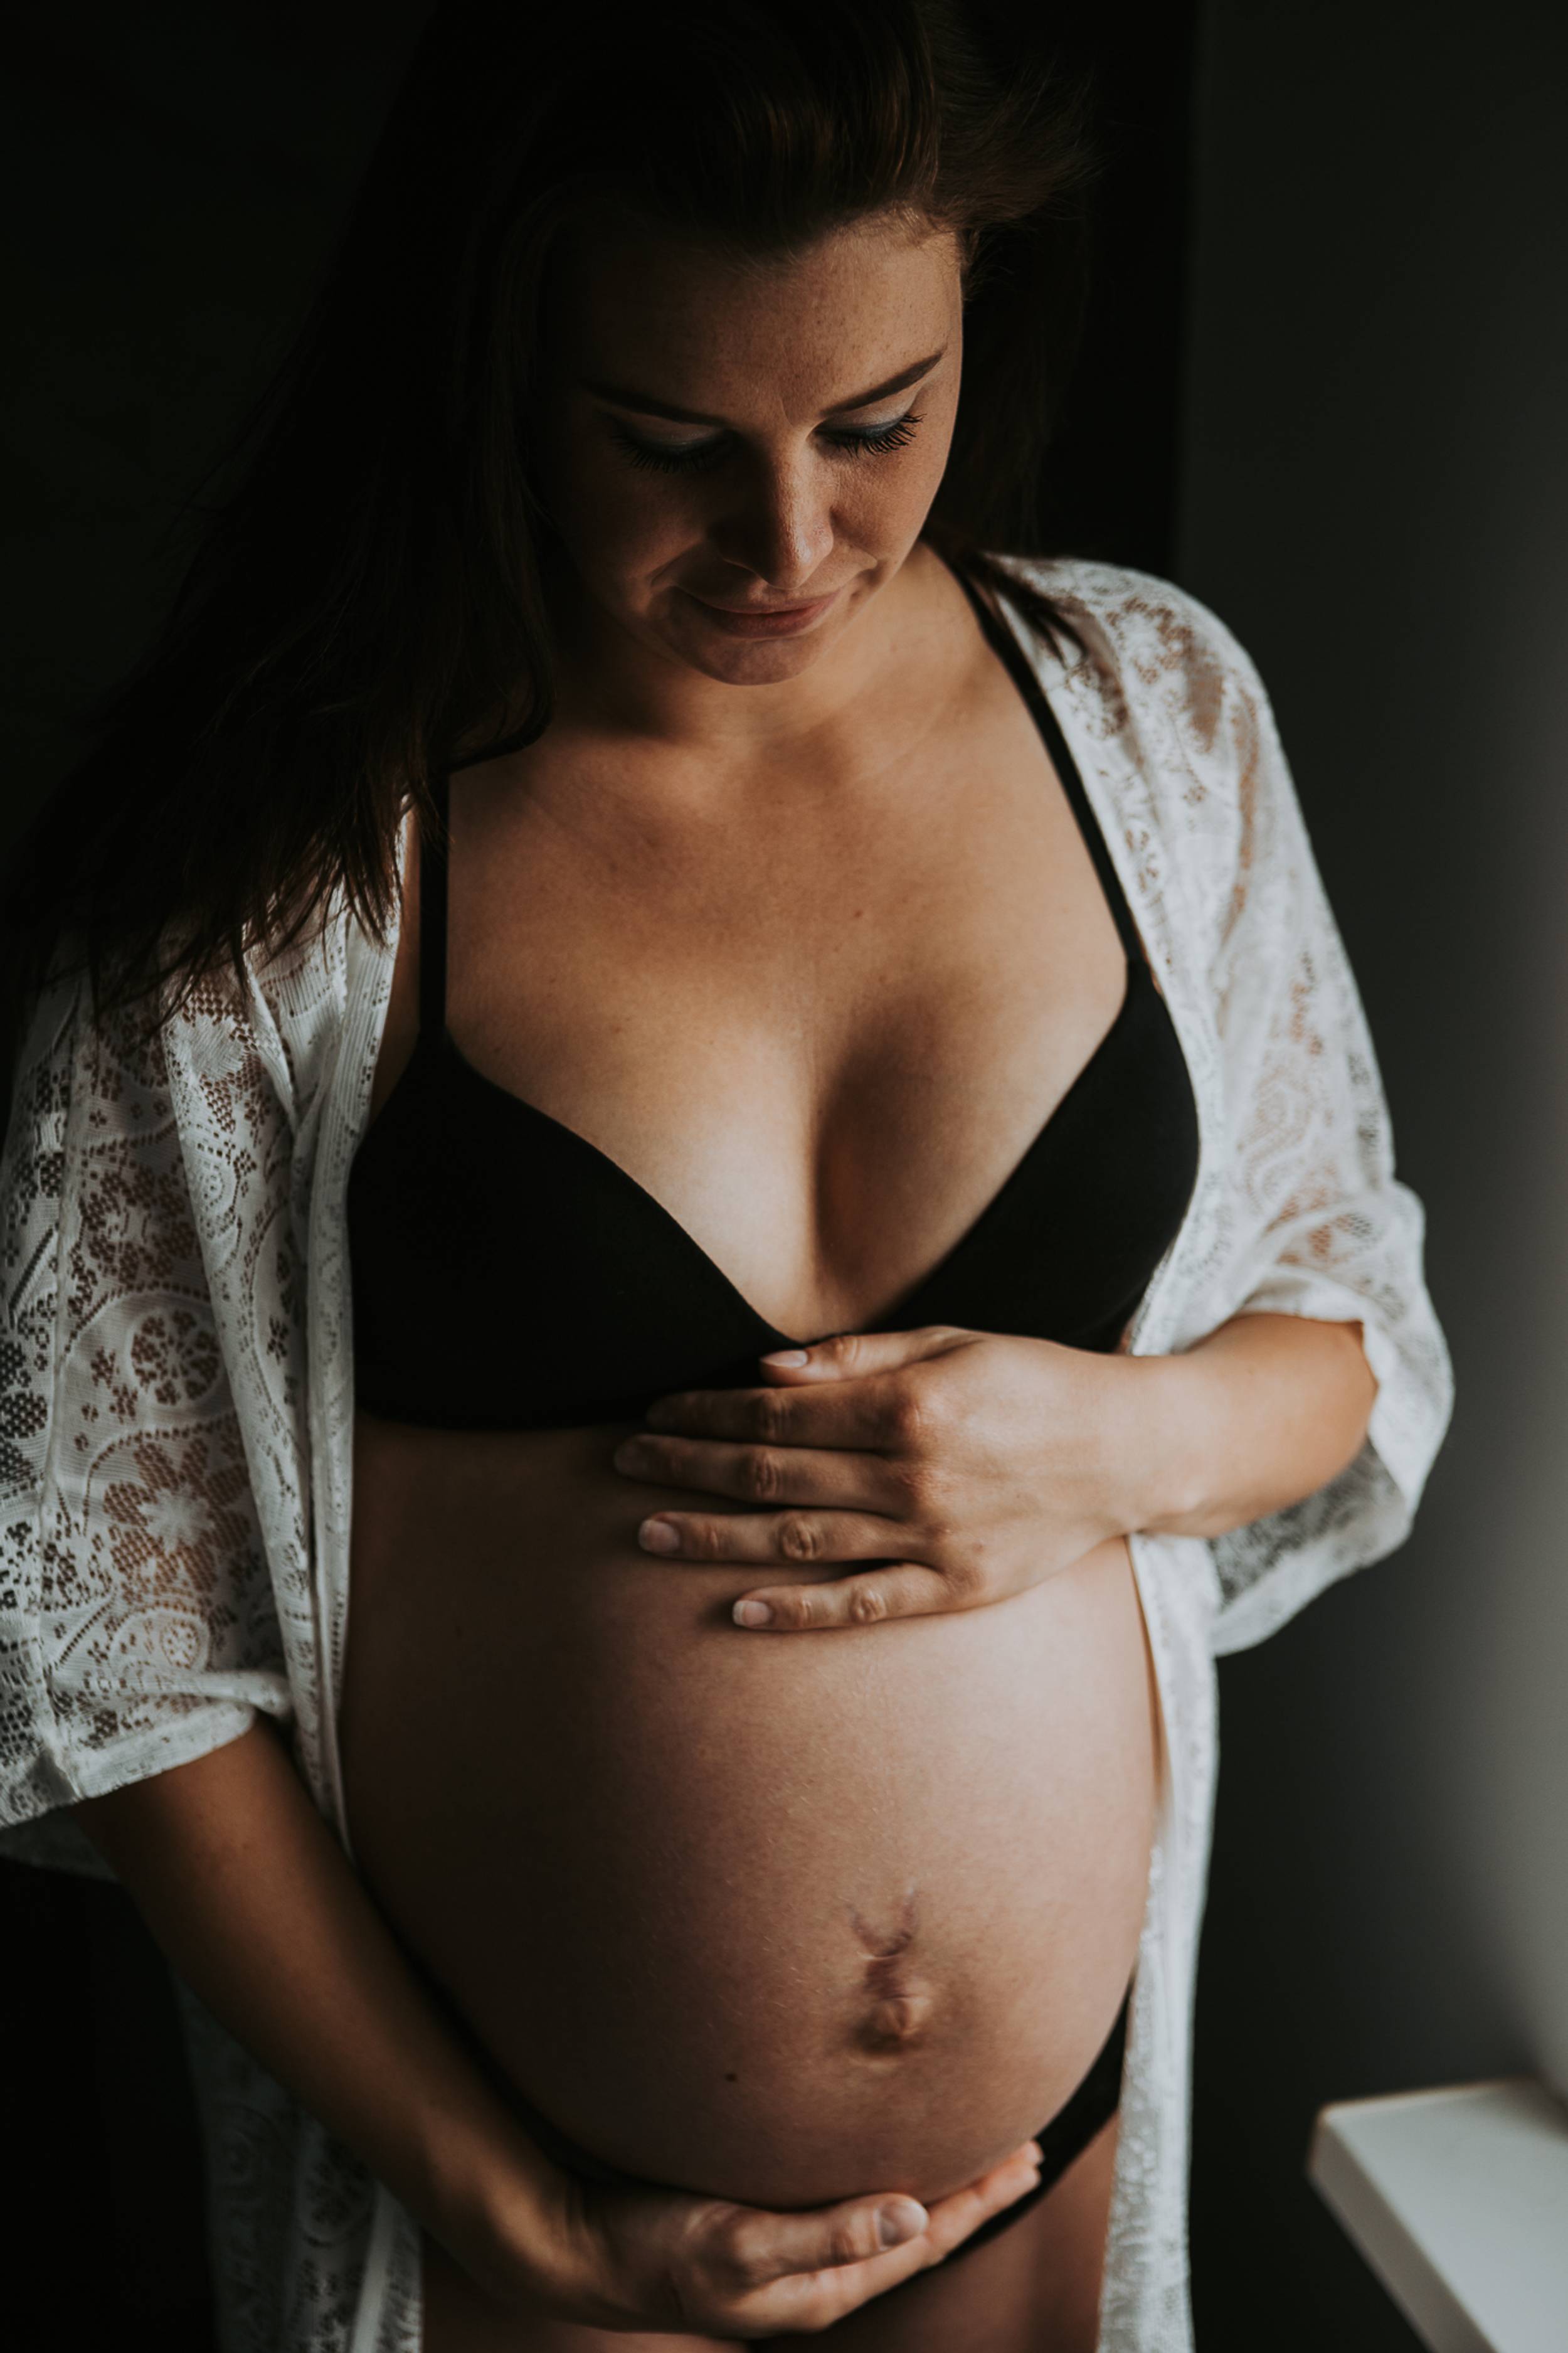 zwangerschap-shoot-fotograaf-spanbroek-46_M1Op9JQ8FJ2.jpg